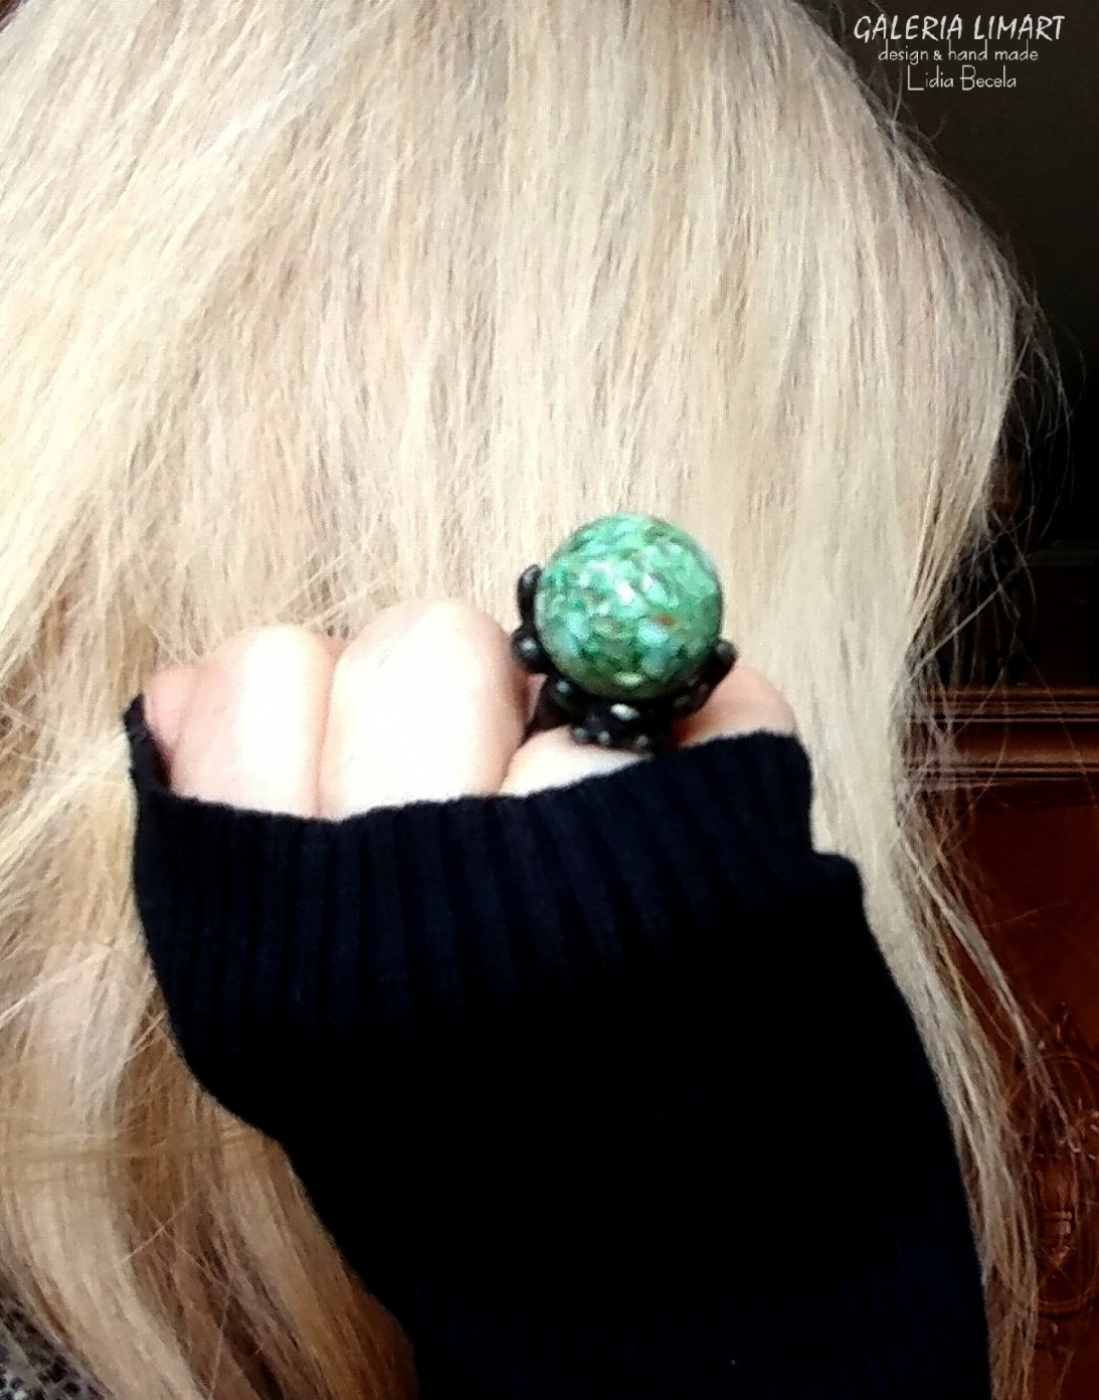 autorski pierścień z zielonych muszli unikatowo i ekologicznie oprawiona w technice Tiffany